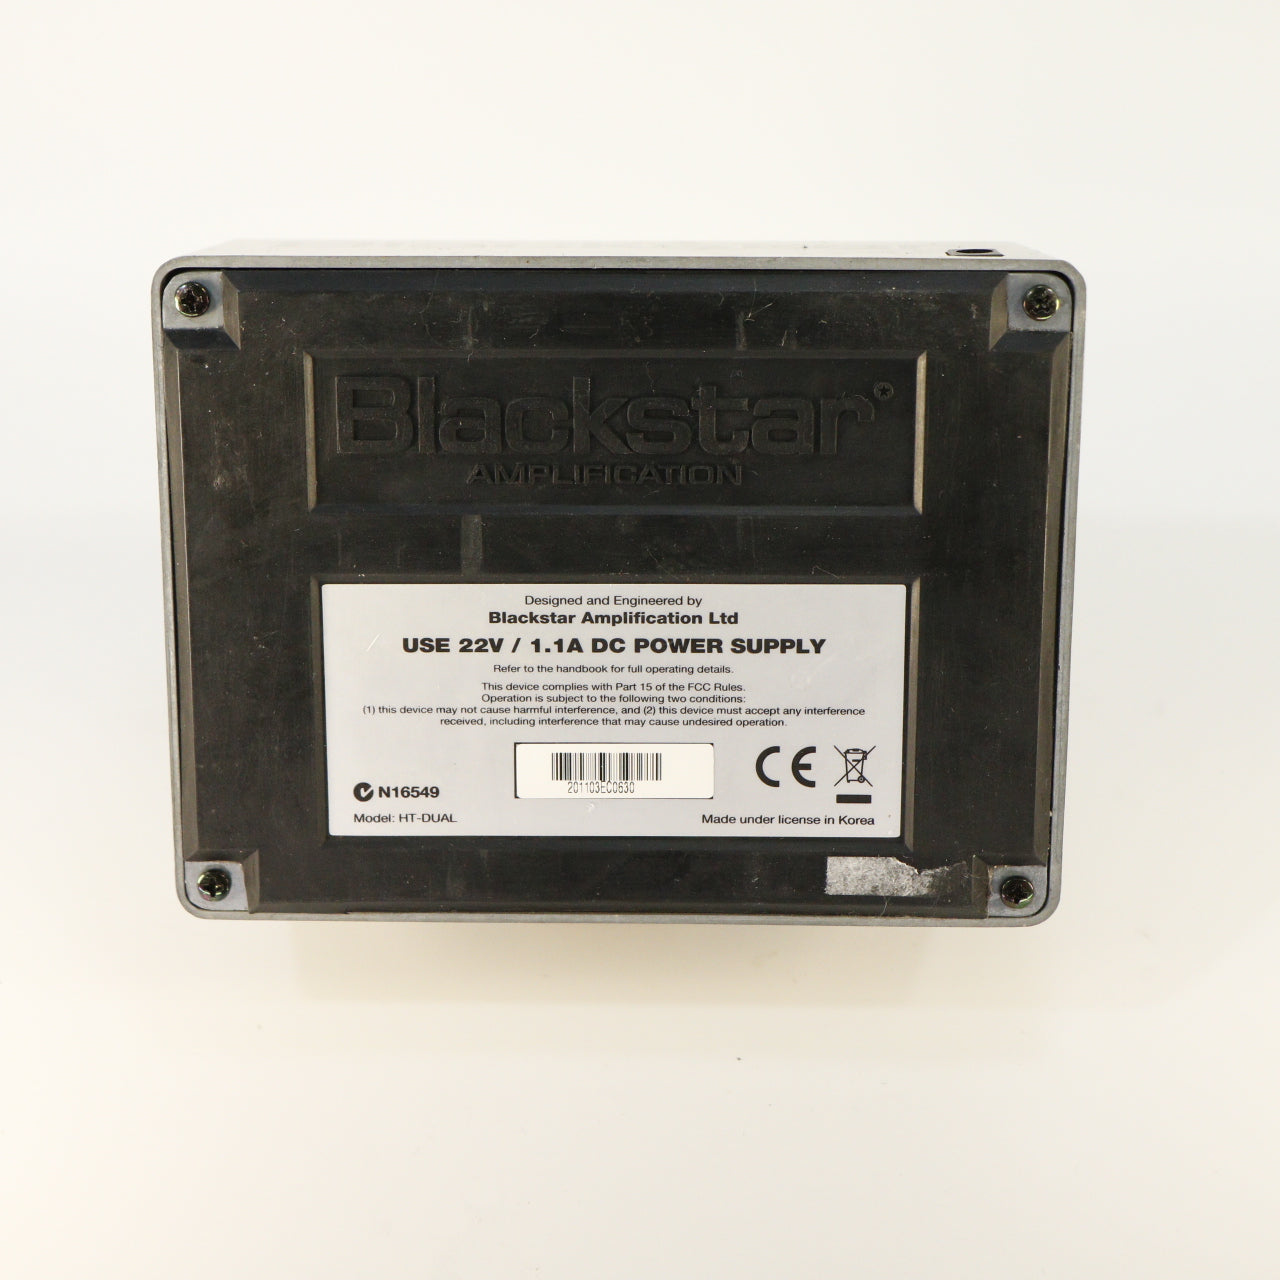 Blackstar HT Dual Valve Distortion (with 22v EU Adapter)